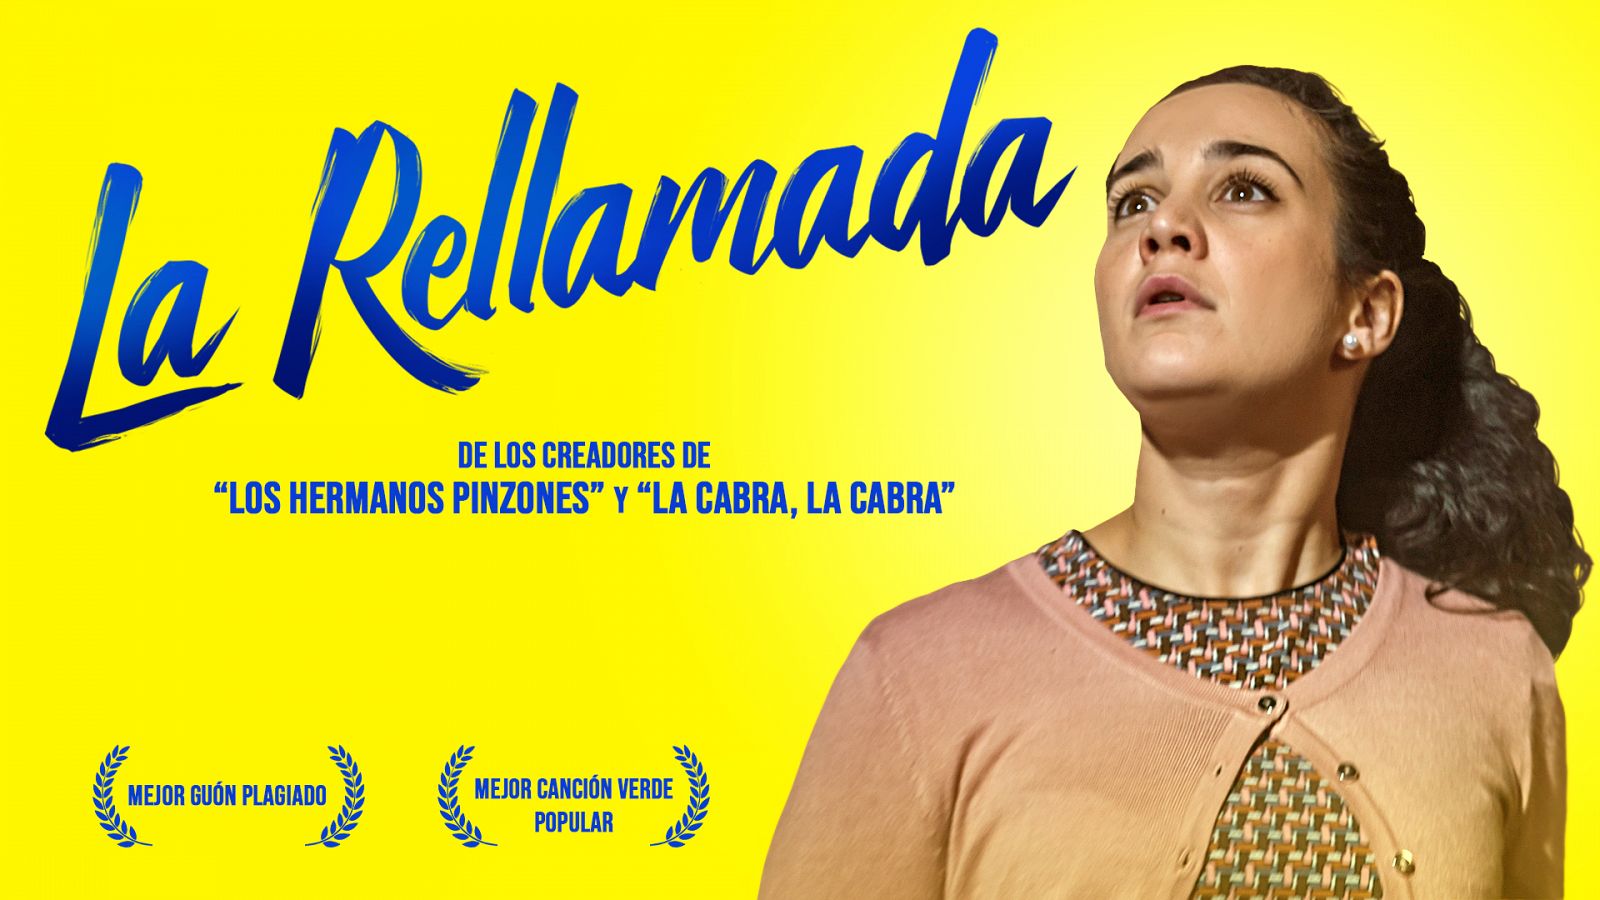 Neverfilms - Mira ya 'La Rellamada'